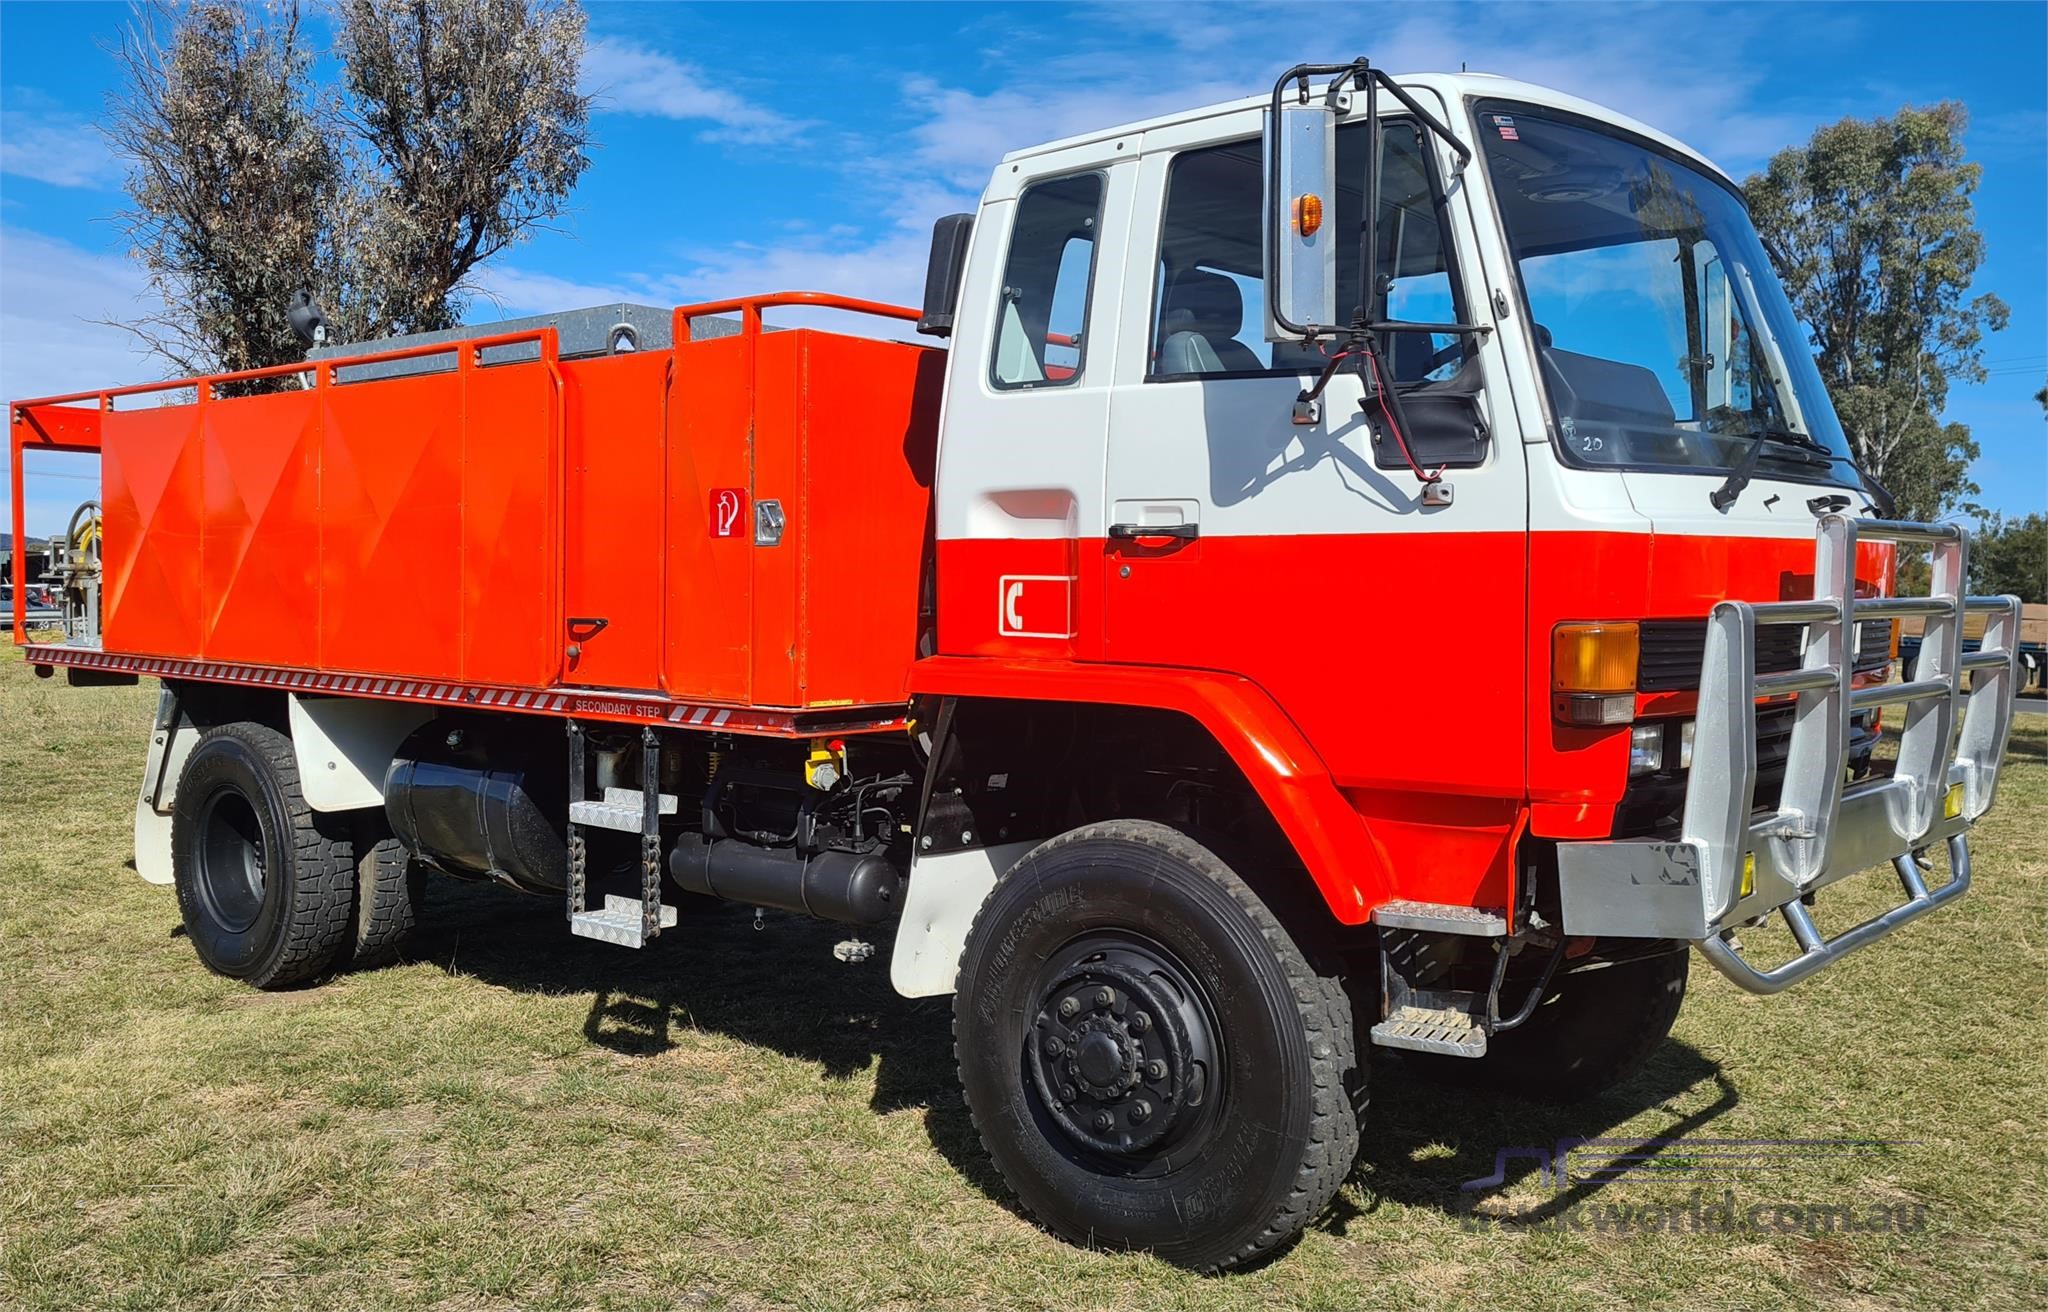 1987 Isuzu FTS Fire Truck truck for sale Grand Motor Group ...